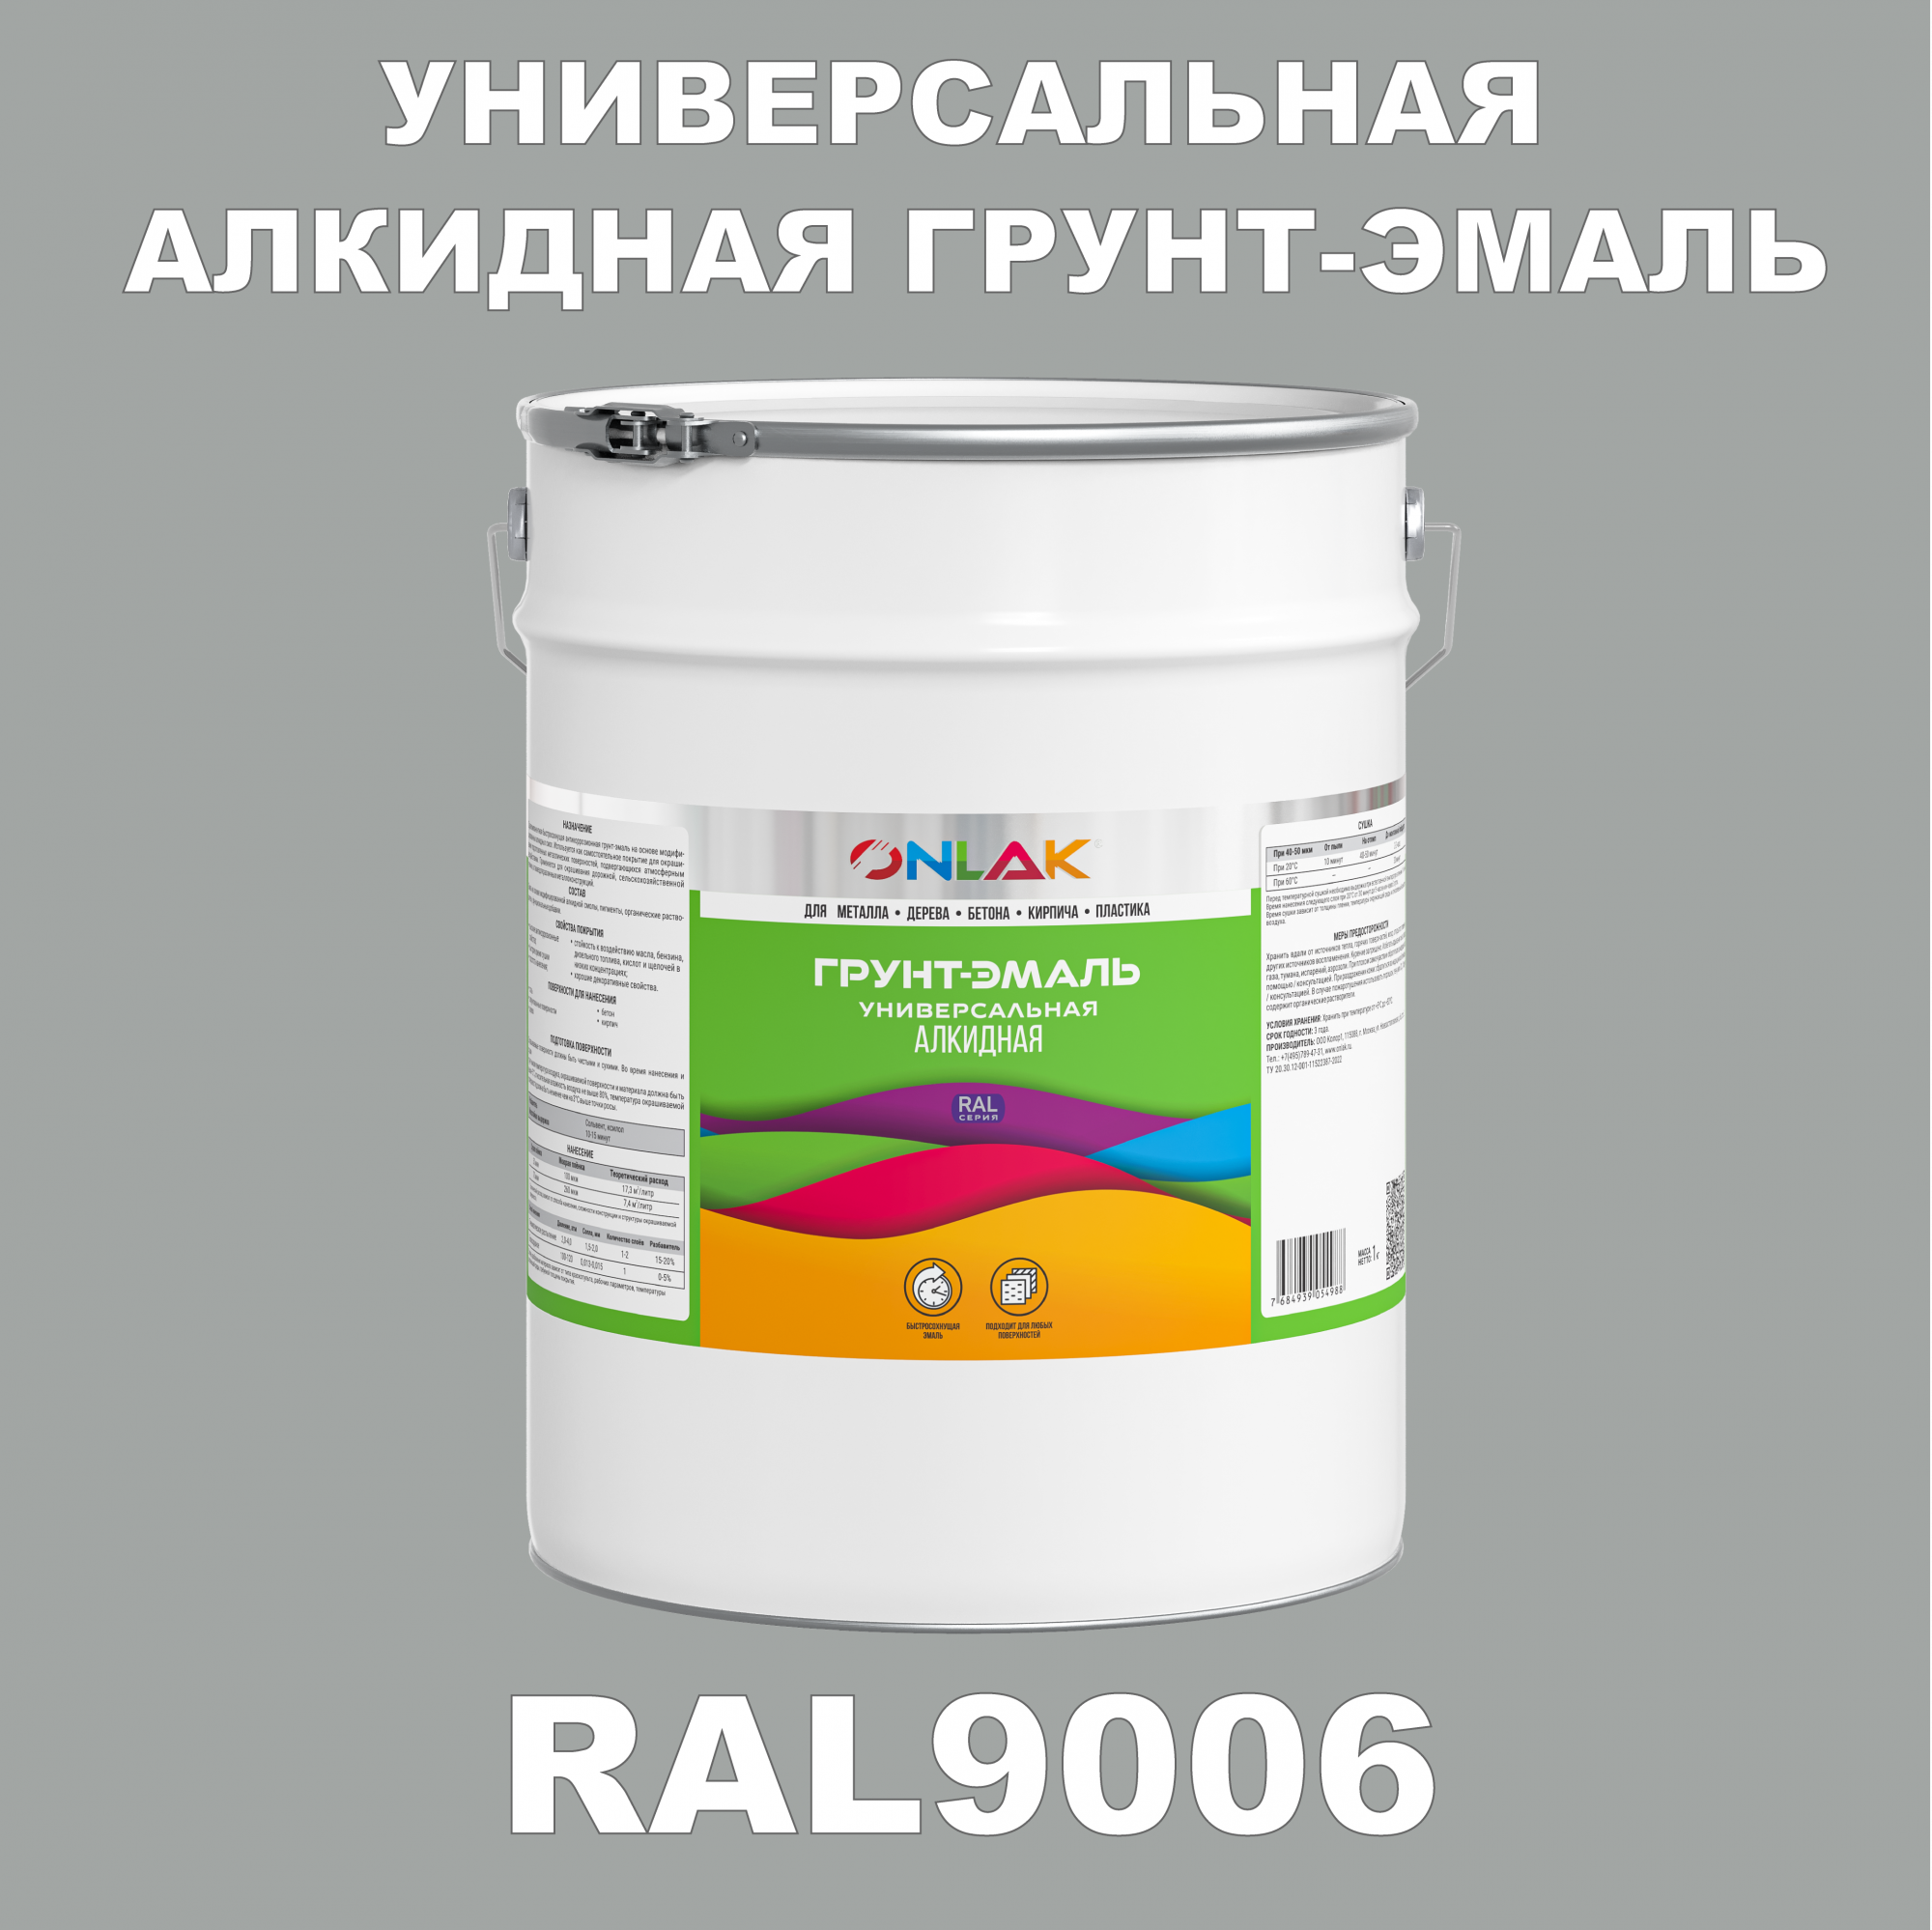 Грунт-эмаль ONLAK 1К RAL9006 антикоррозионная алкидная по металлу по ржавчине 20 кг грунт эмаль yollo по ржавчине алкидная синяя 0 9 кг